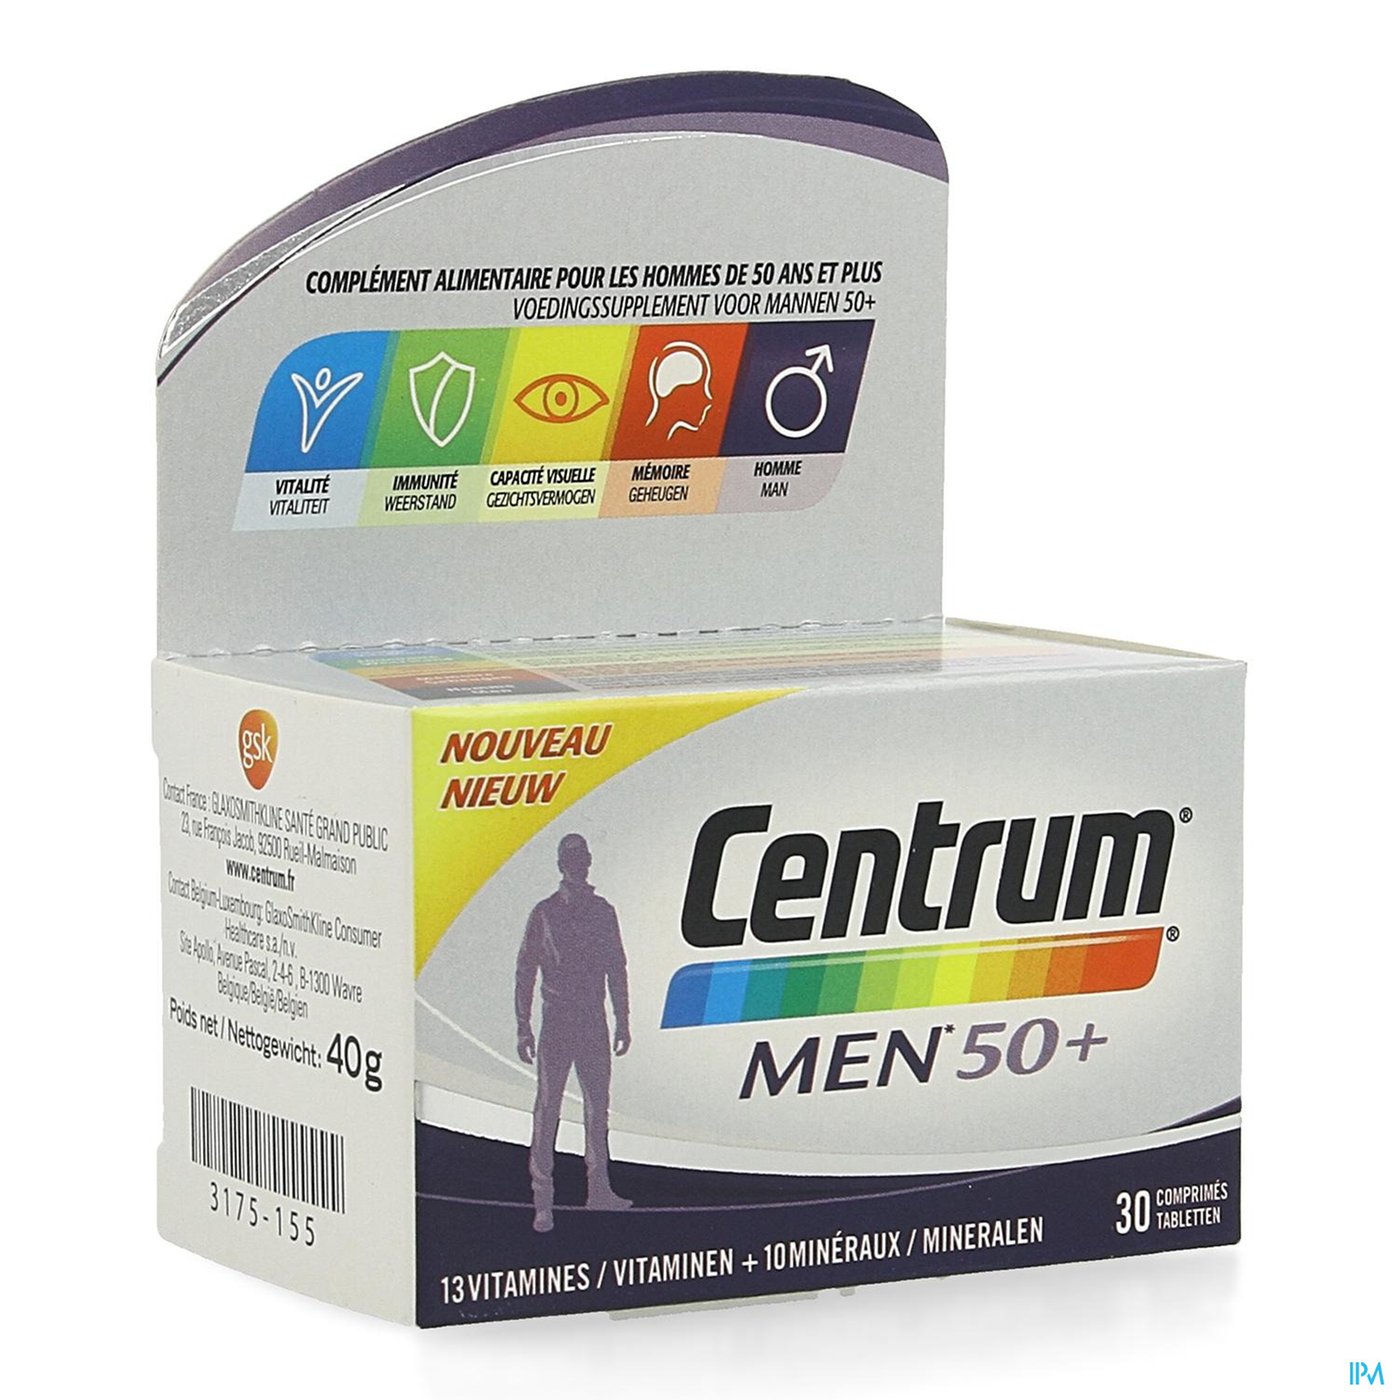 CENTRUM MEN 50+ 30 TABL packshot